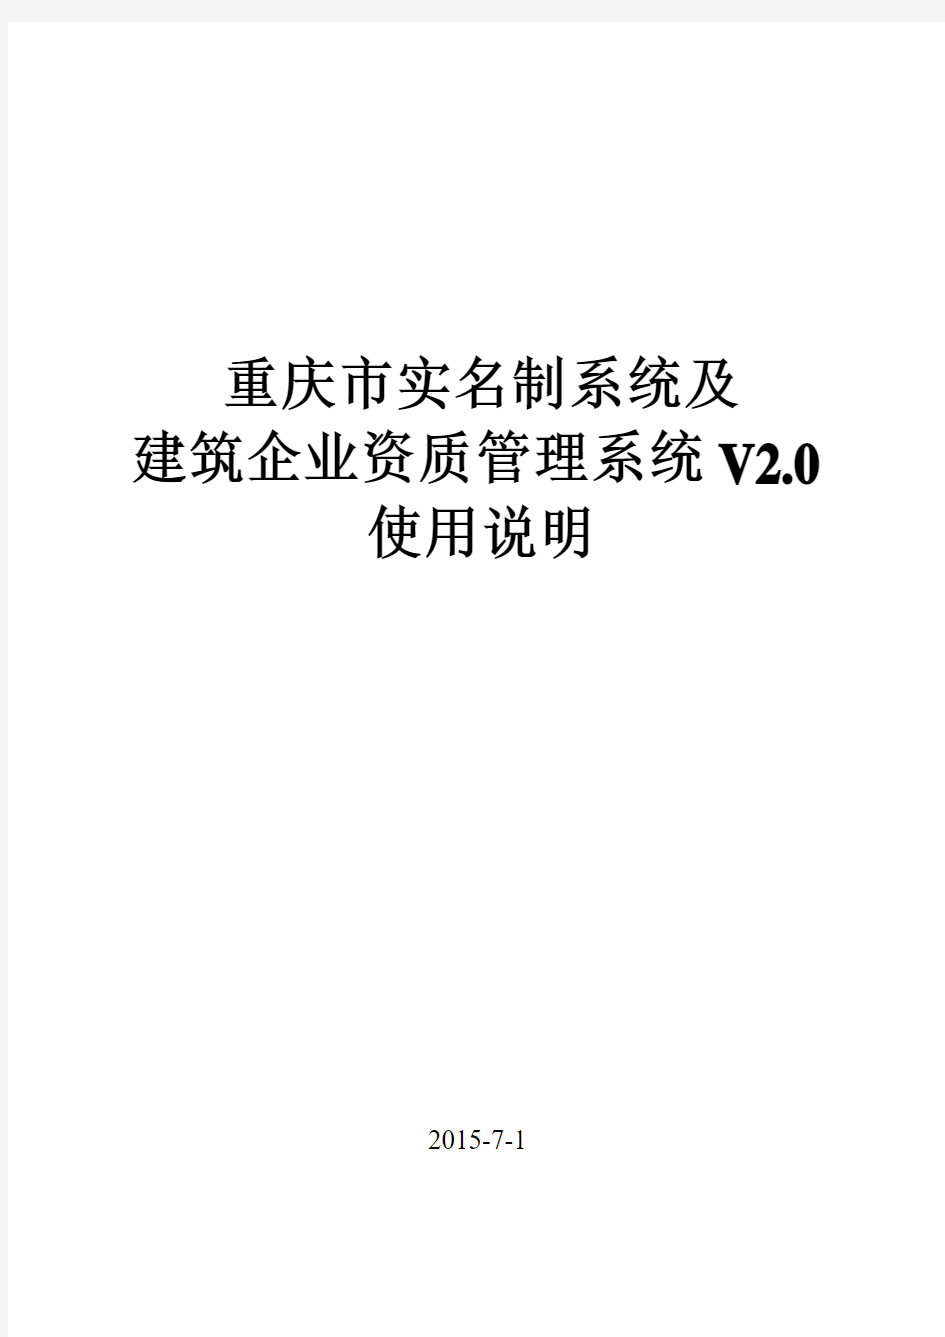 重庆市建筑业企业资质管理系统V2.0(使用说明)